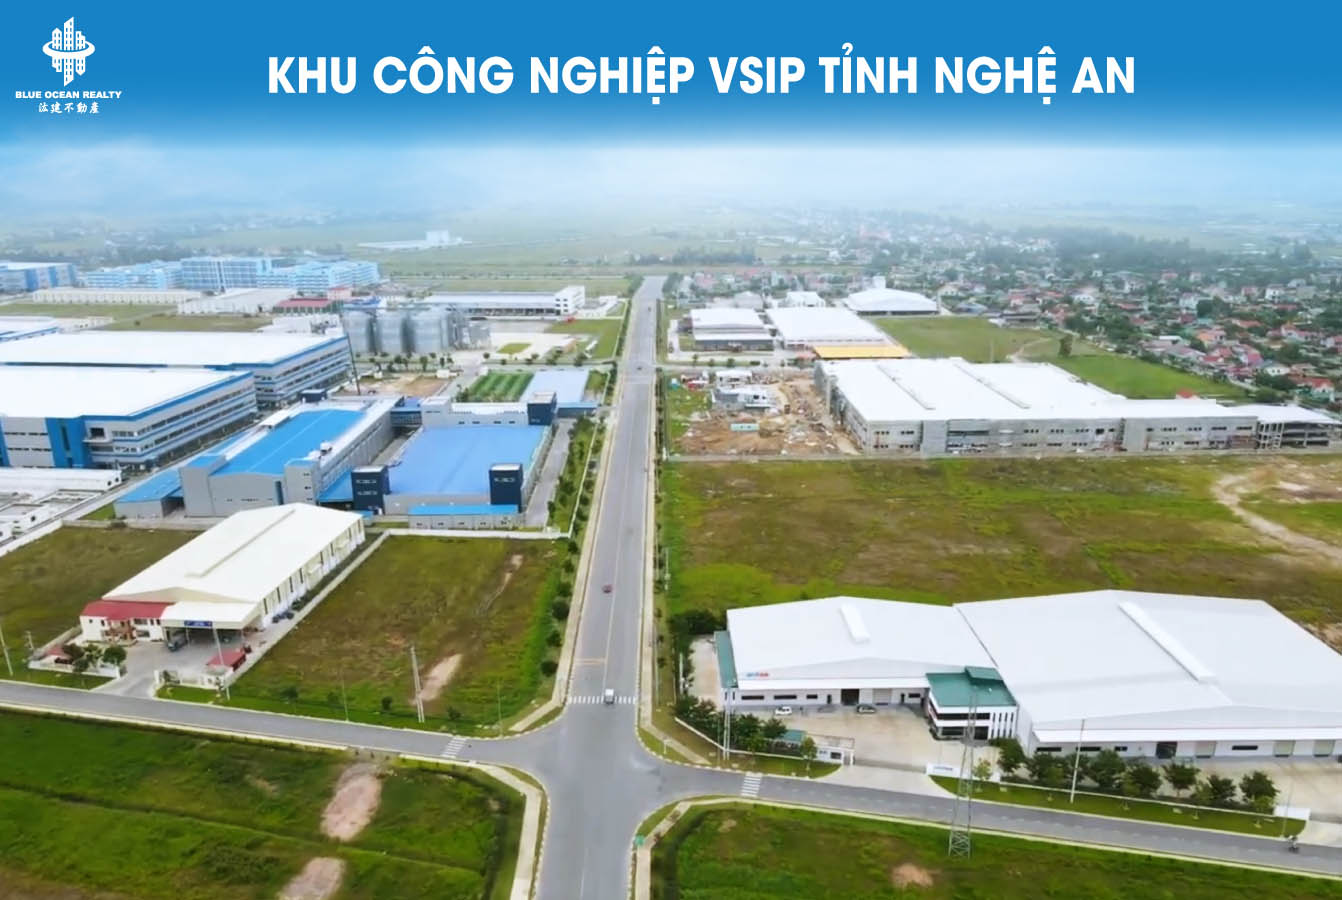 Khu công nghiệp (KCN) VSIP tỉnh Nghệ An